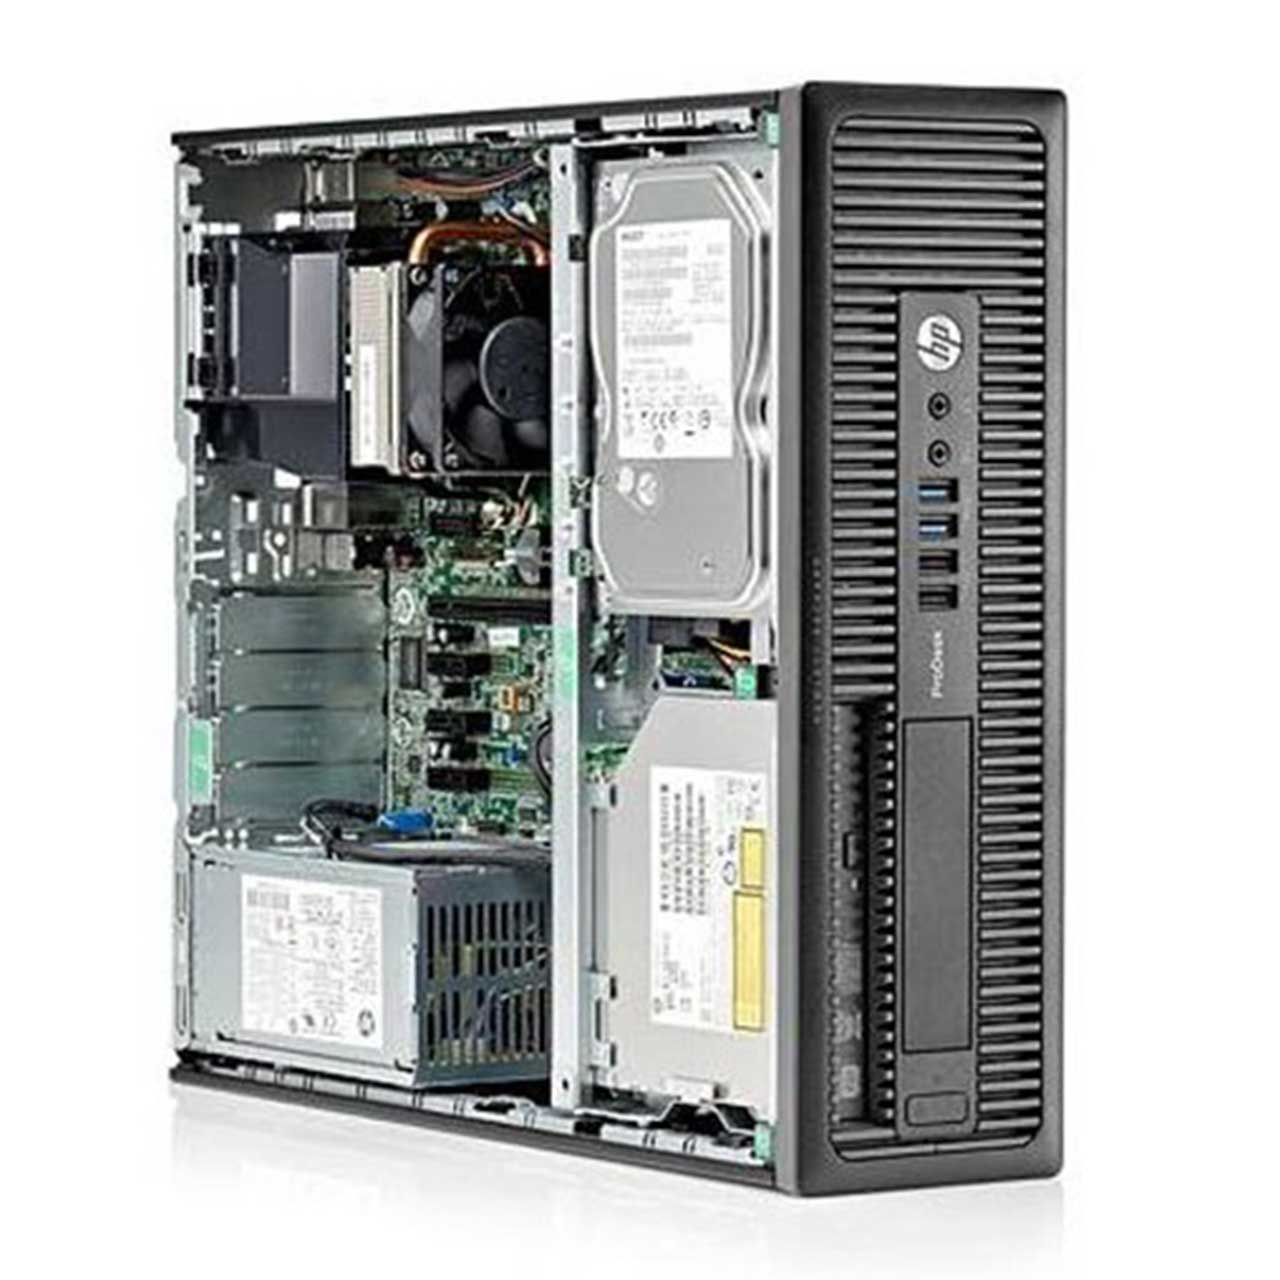 کیس HP EliteDesk 800/600 G1 سایز مینی